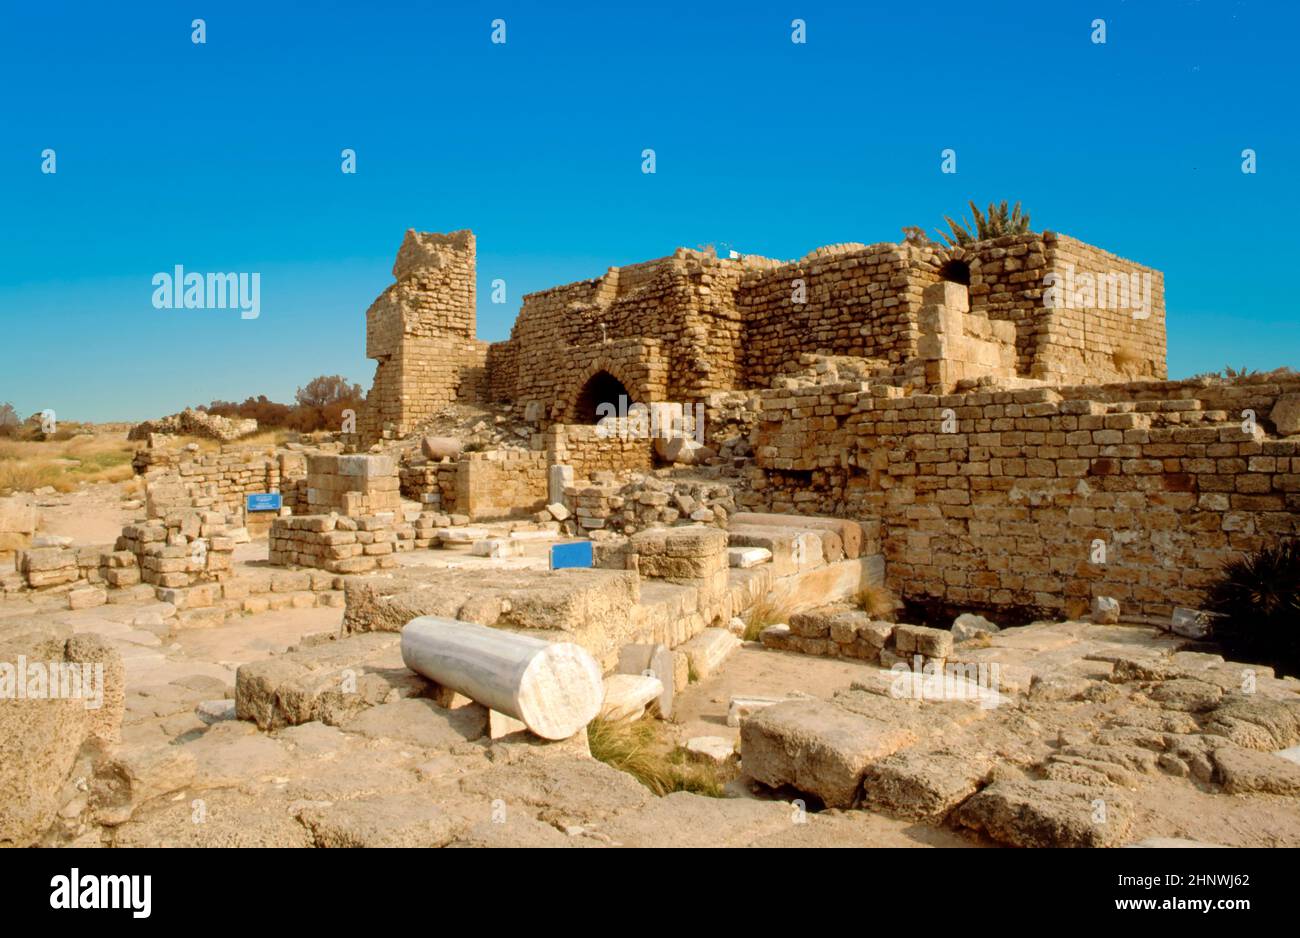 Ruinas de una fortaleza, sitio histórico de Israel en el desierto de Judea. Foto de stock